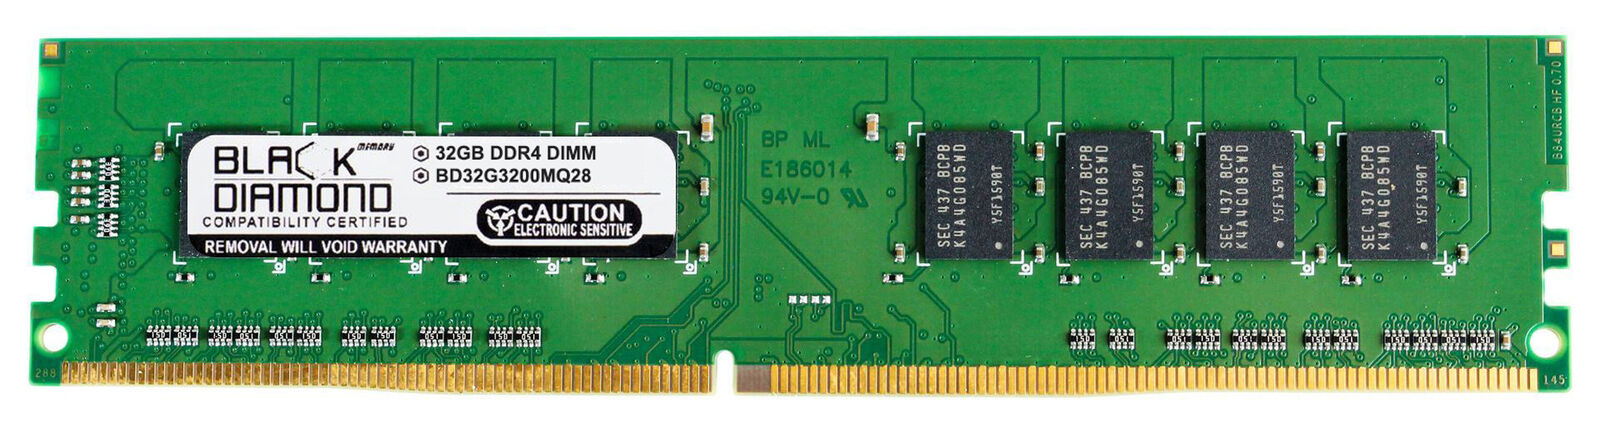 32GB Memory HP M01,M01-F1029ur,M01-F1124 PC,M01-F1209nj,M01-F1001ur,M01-F1019ns